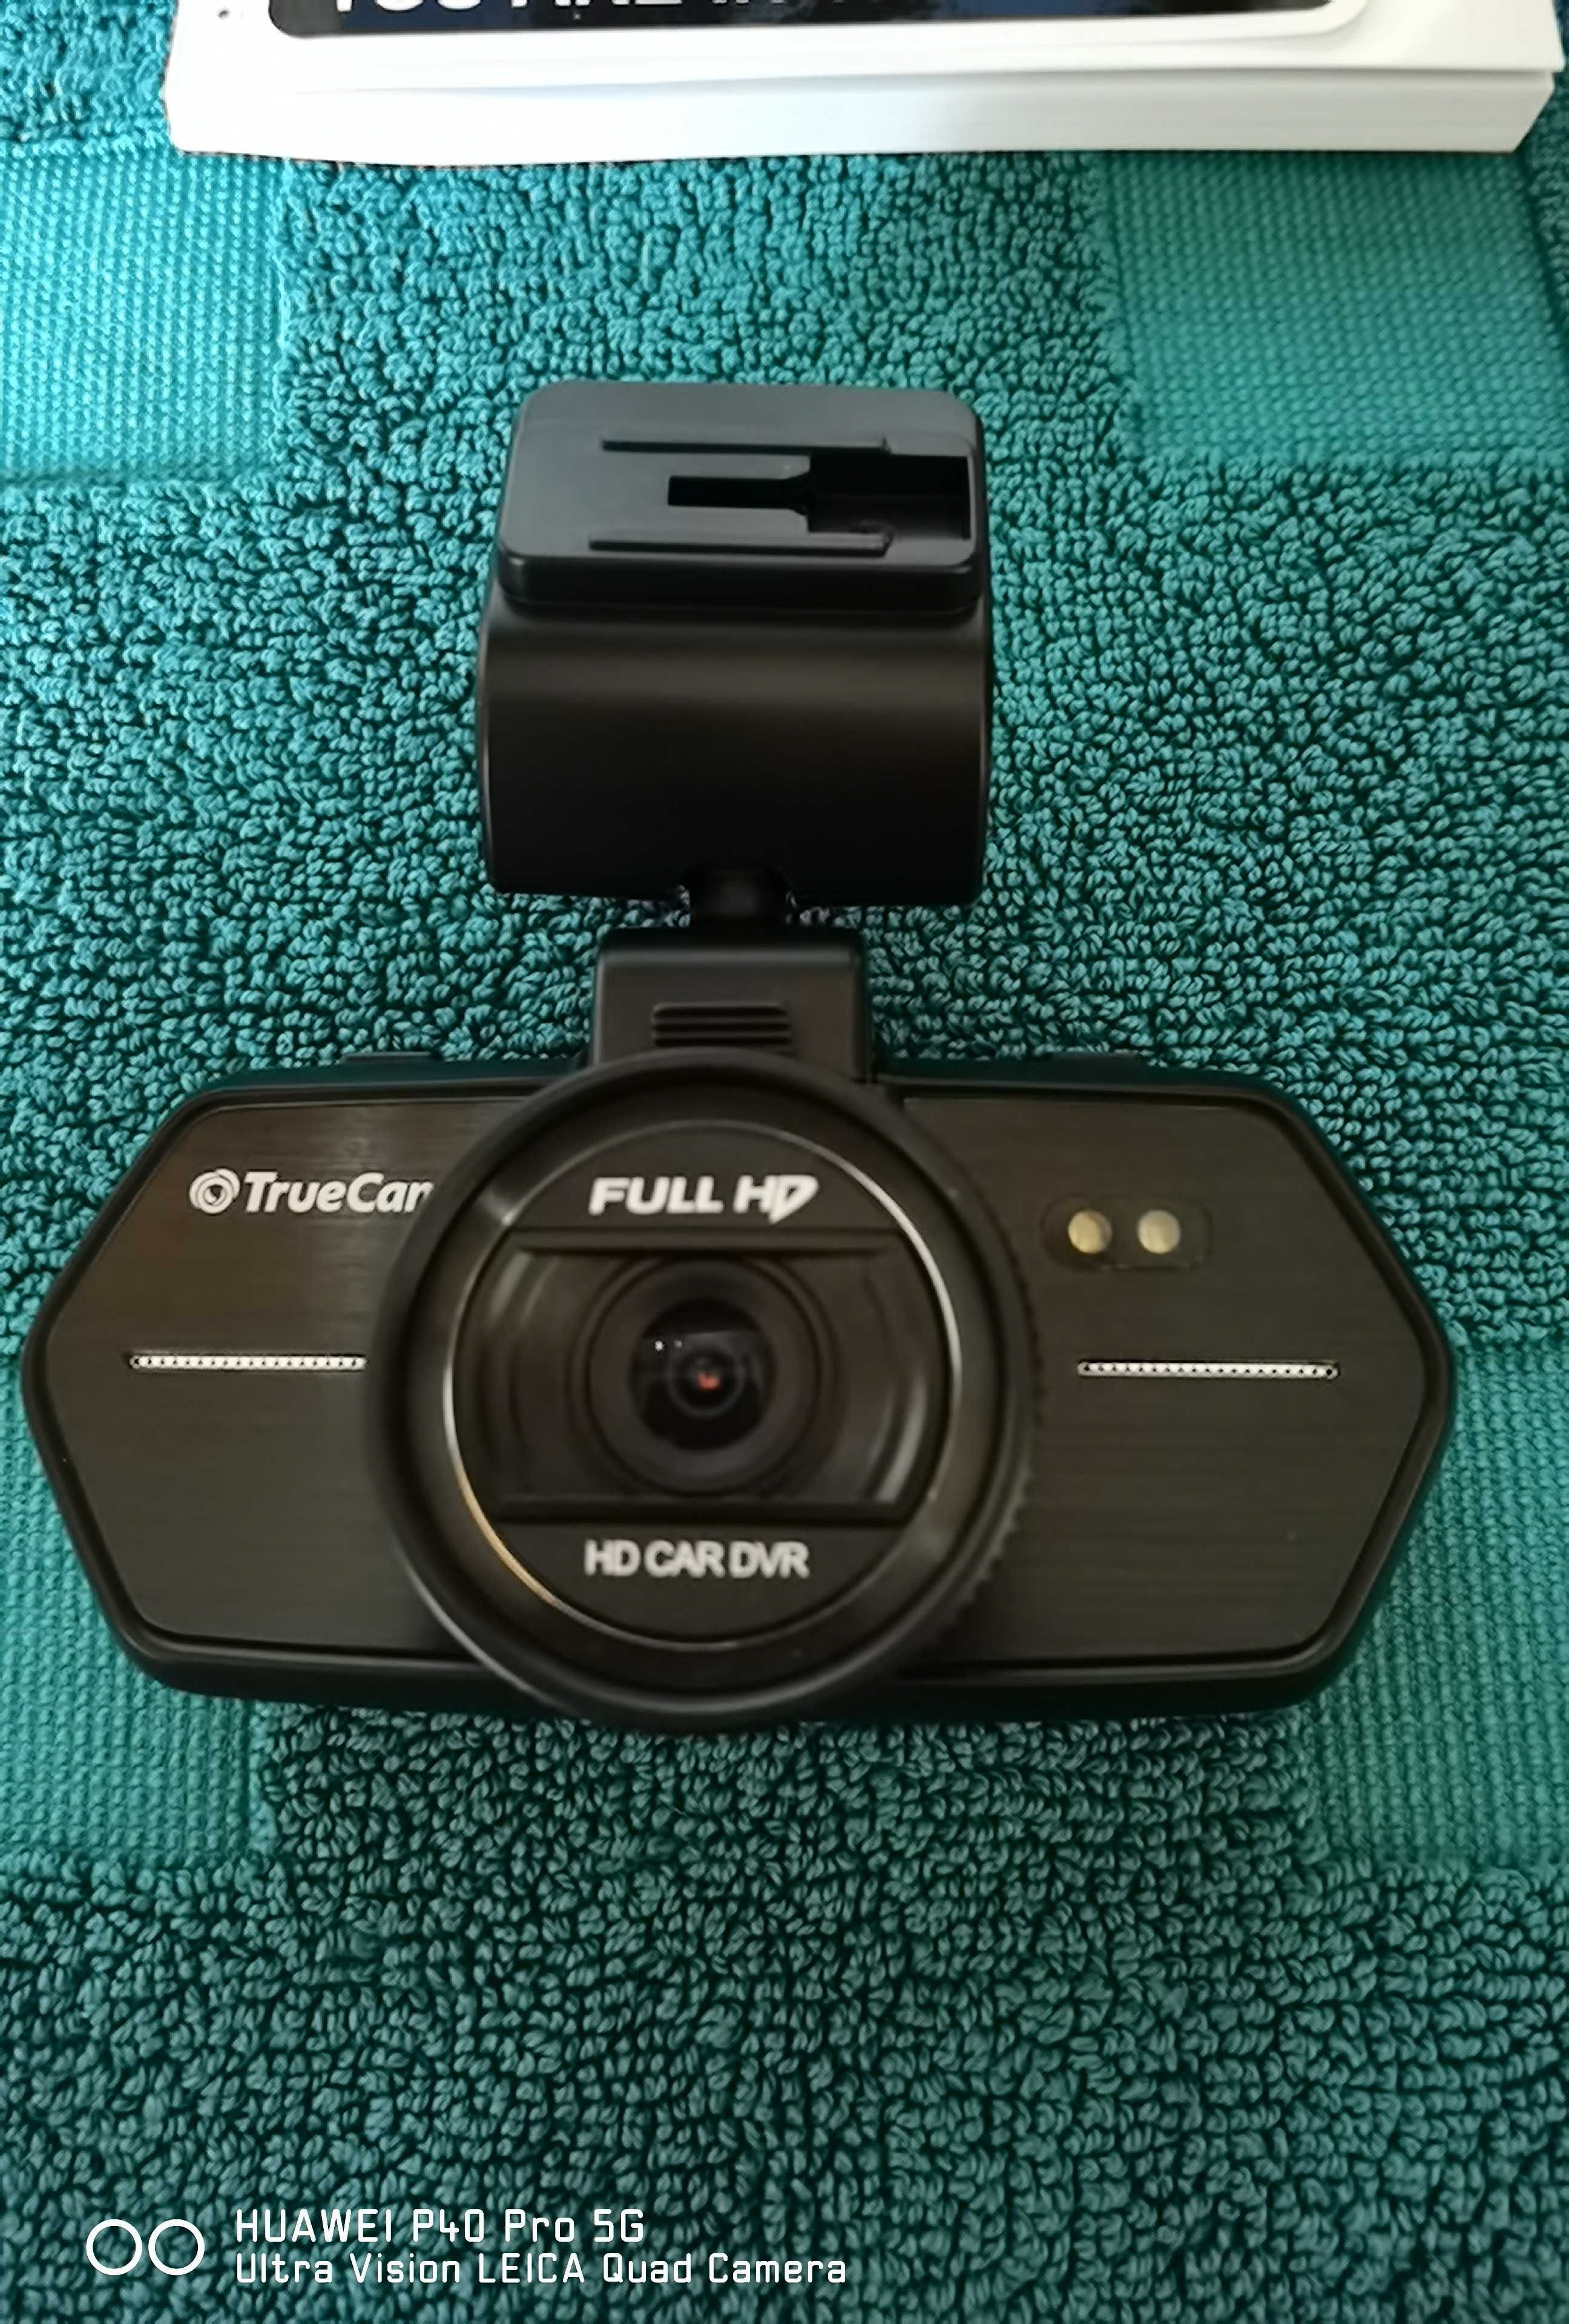 Продавам автокамера Truecam A6 Dual с две камери.Нова!!!